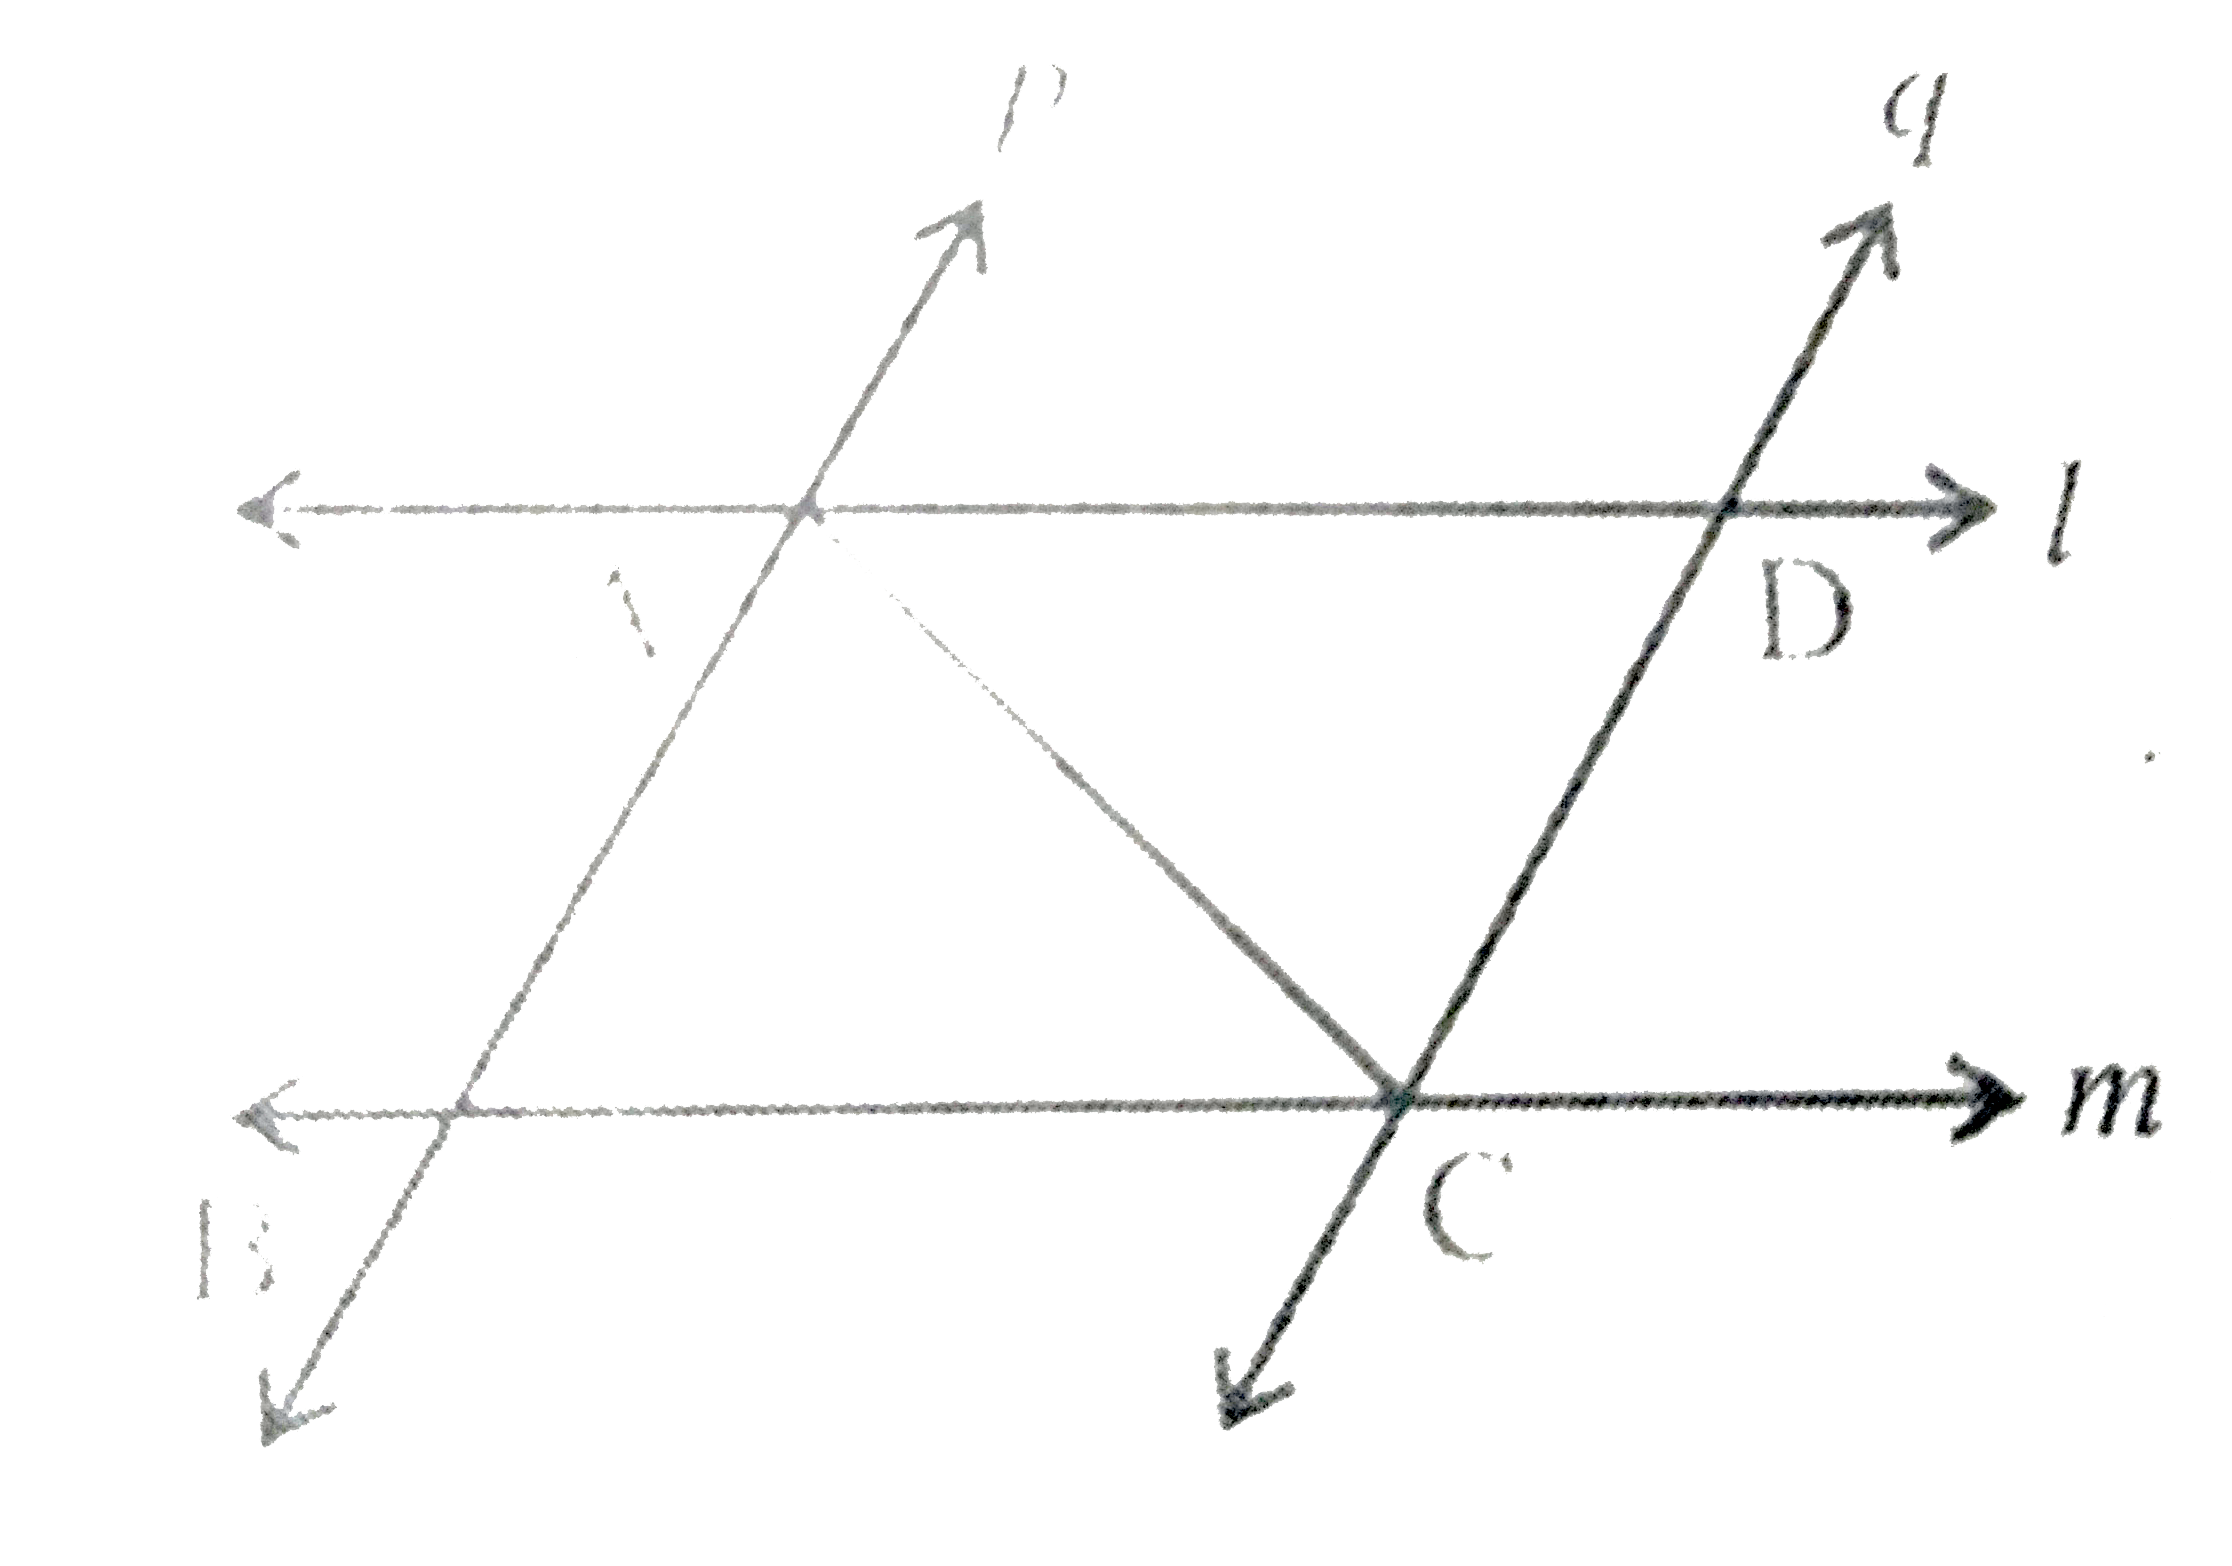 l   और m दो समांतर रेखाएँ हैं जिन्हें समांतर रेखाओं p और q का अन्य युग्म प्रतिच्छेदित करता है। दर्शाइए कि Delta ABC ~= Delta CDA   है।